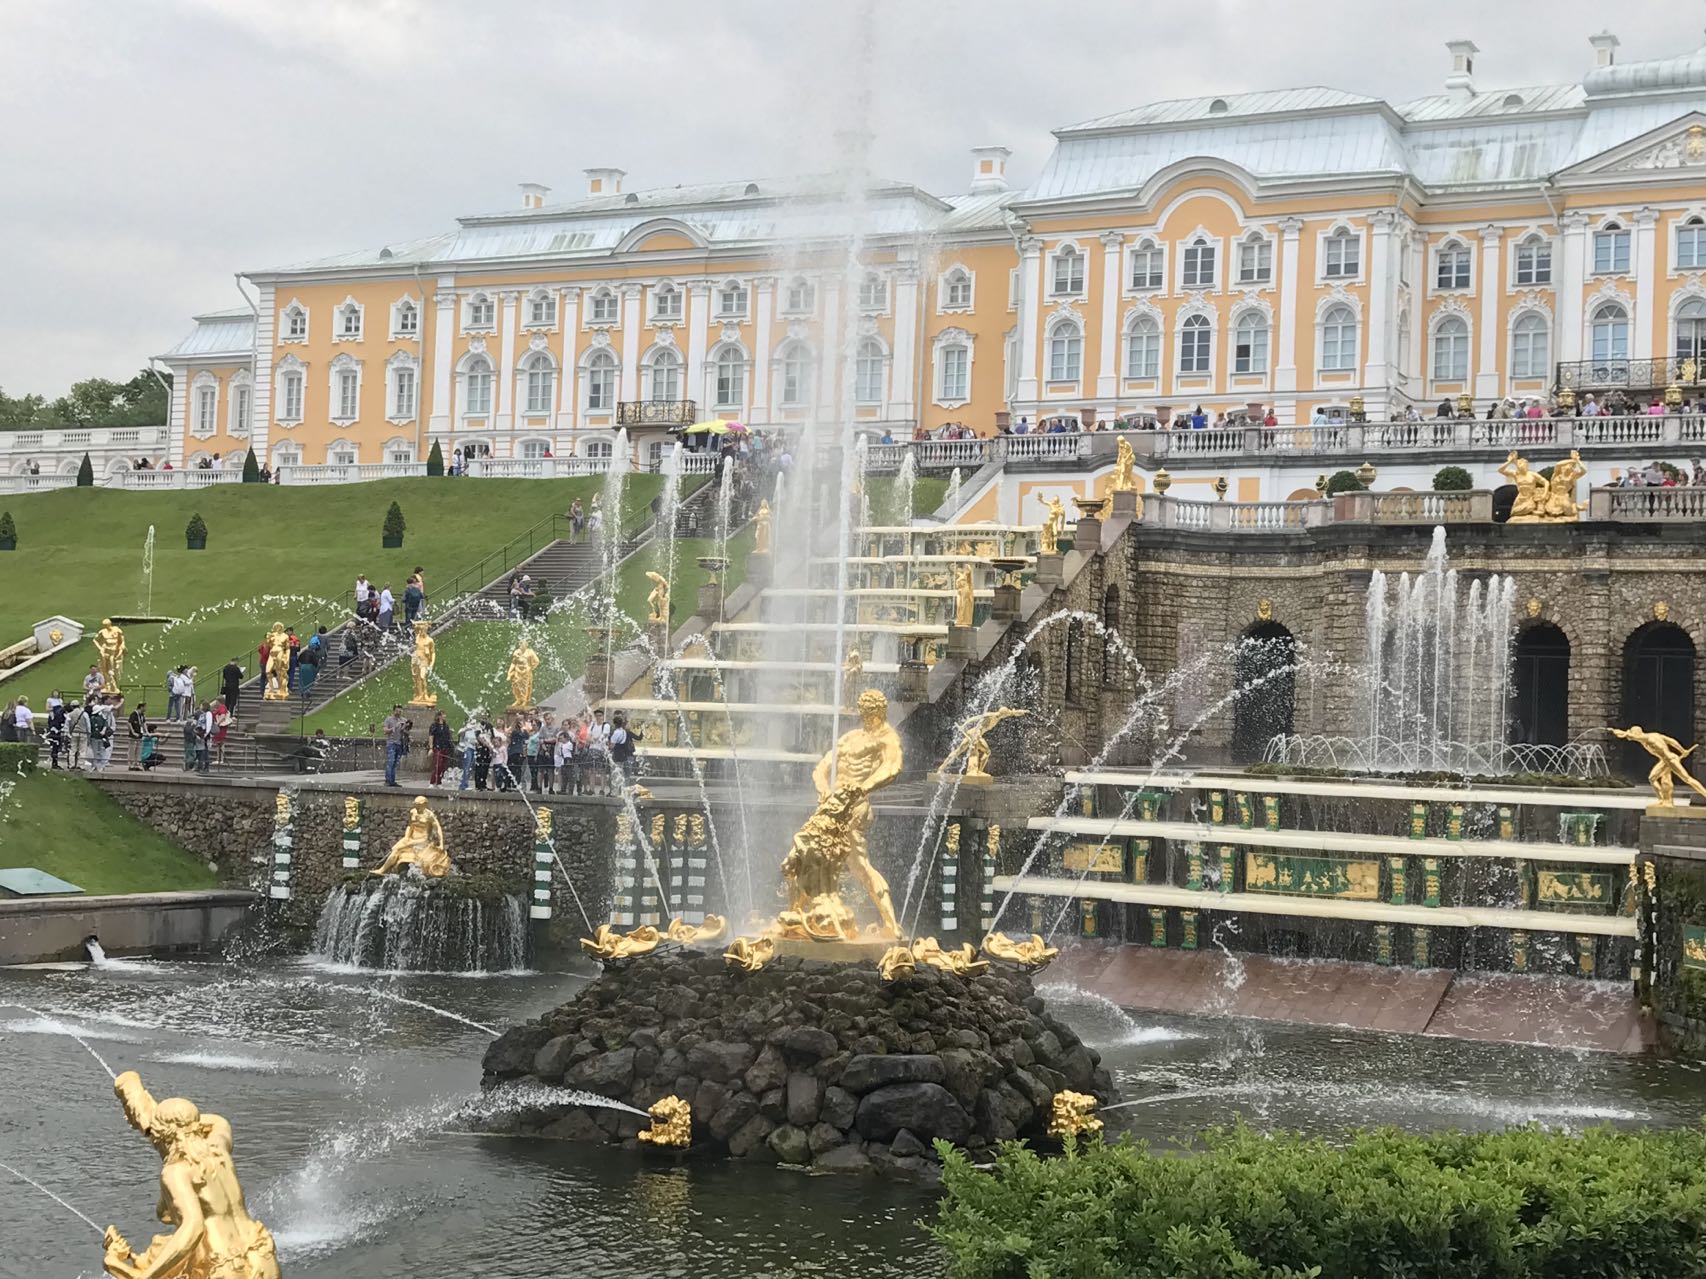 Guangneng's St. Petersburg, Peterhof